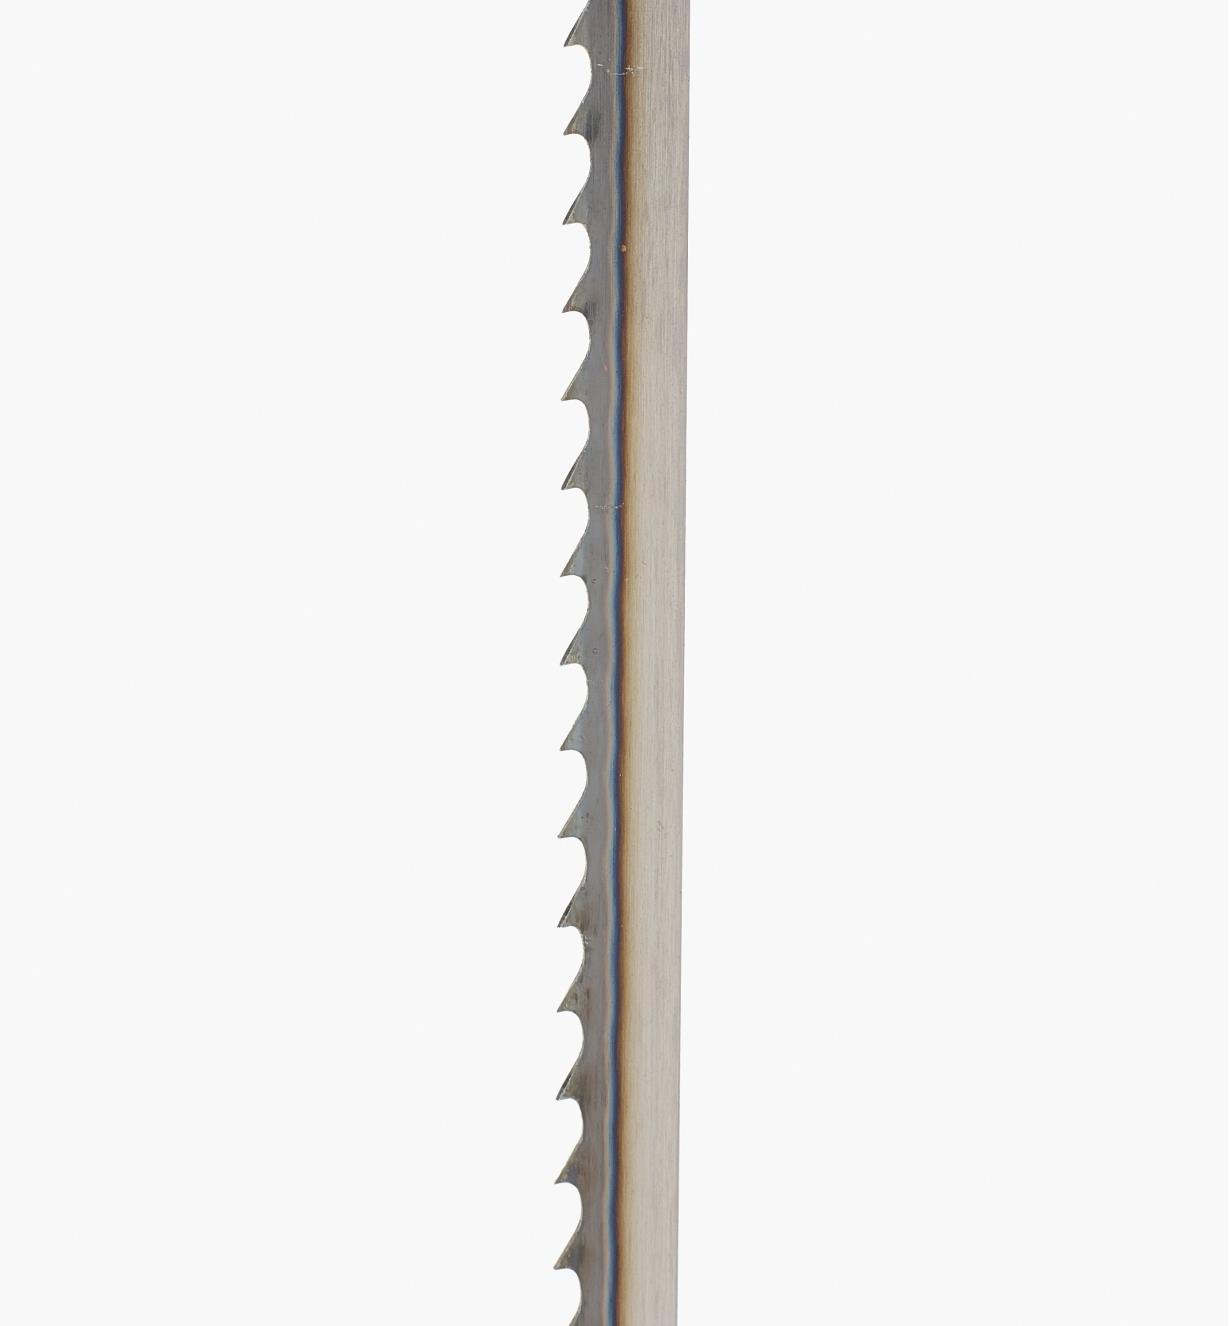 02J0205 - 1/4" × 6tpi Bandsaw Blade